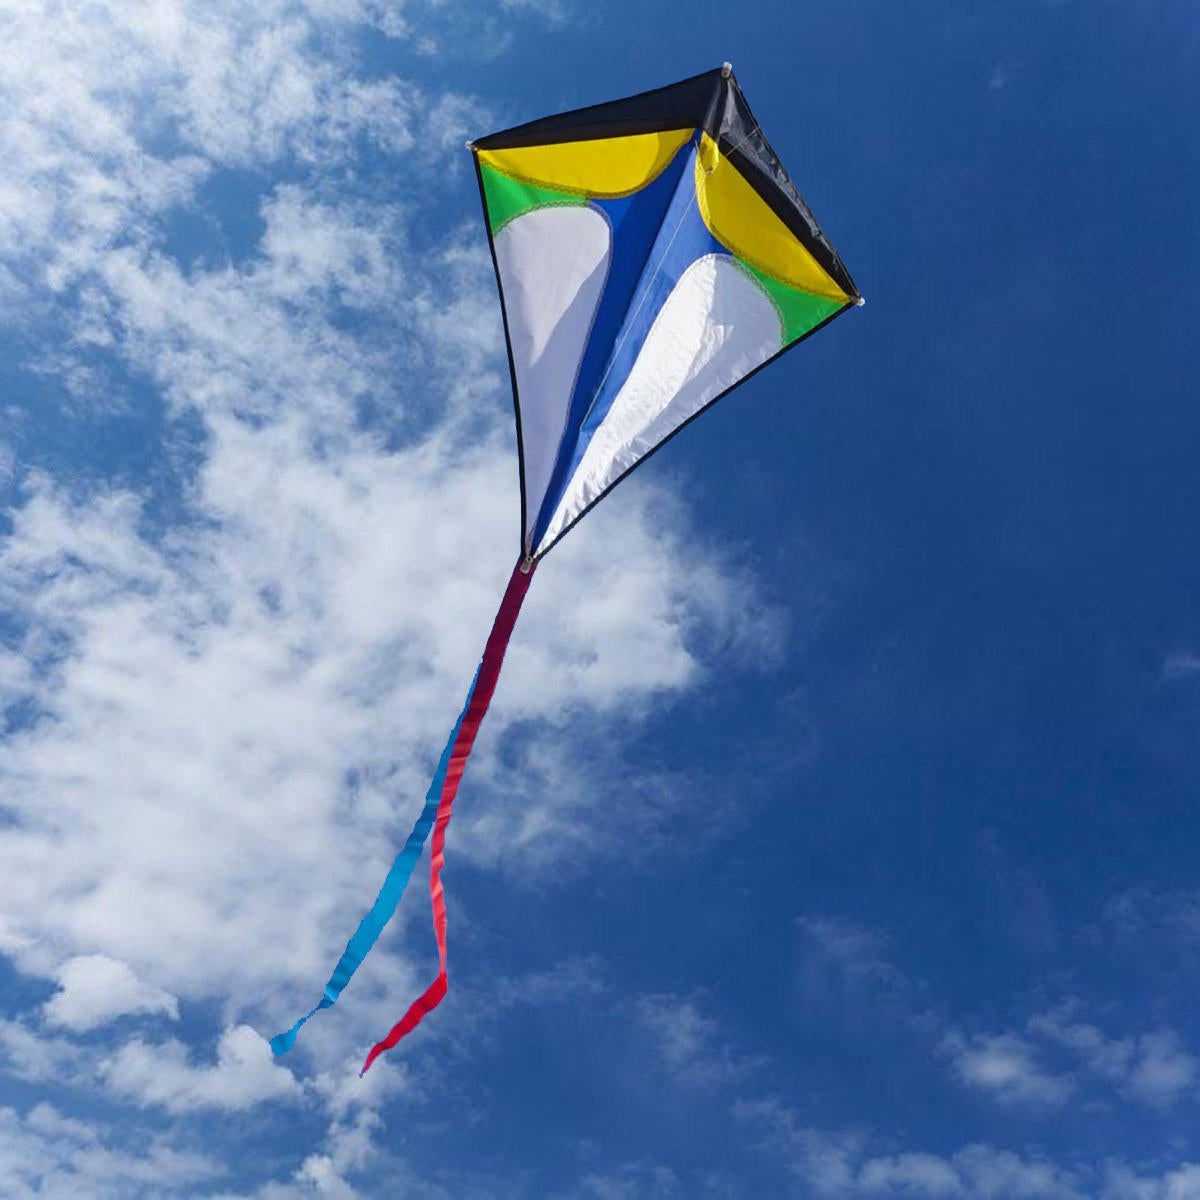 2630 Diamond Delta Kite Outdoor Sports Toys For Kids Single Line Blue Toys